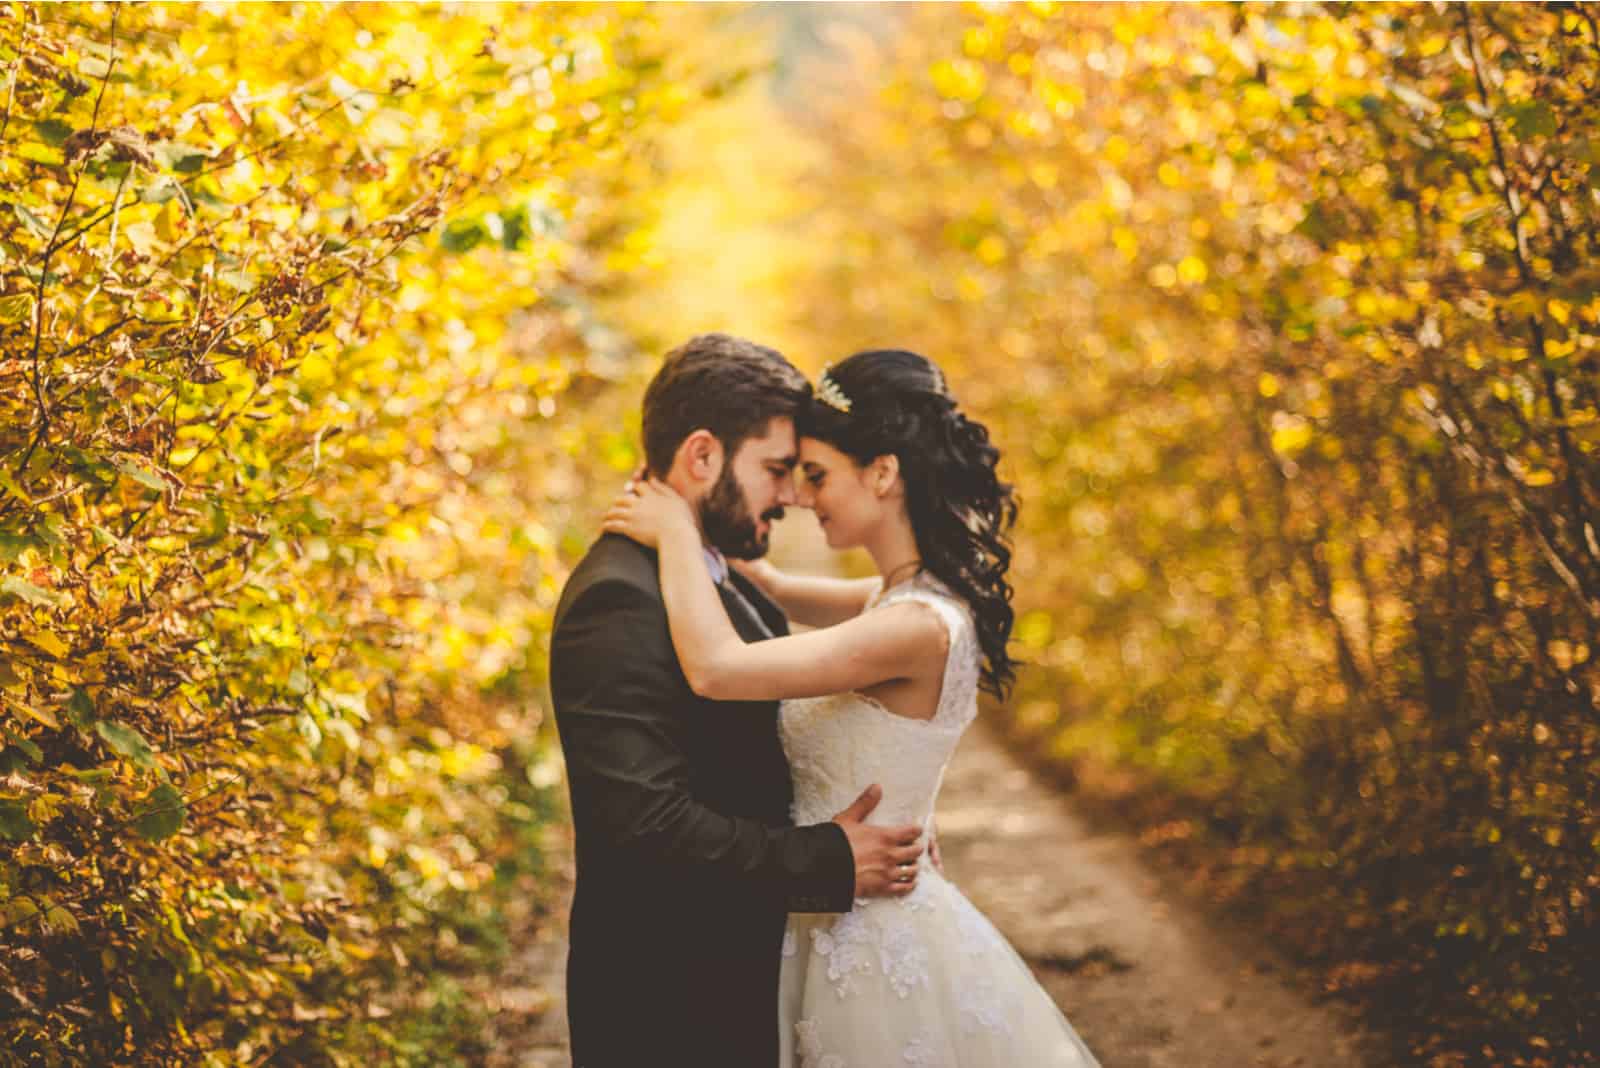 Hochzeit Herbst. Braut und Bräutigam gehen im gelben Herbstwald